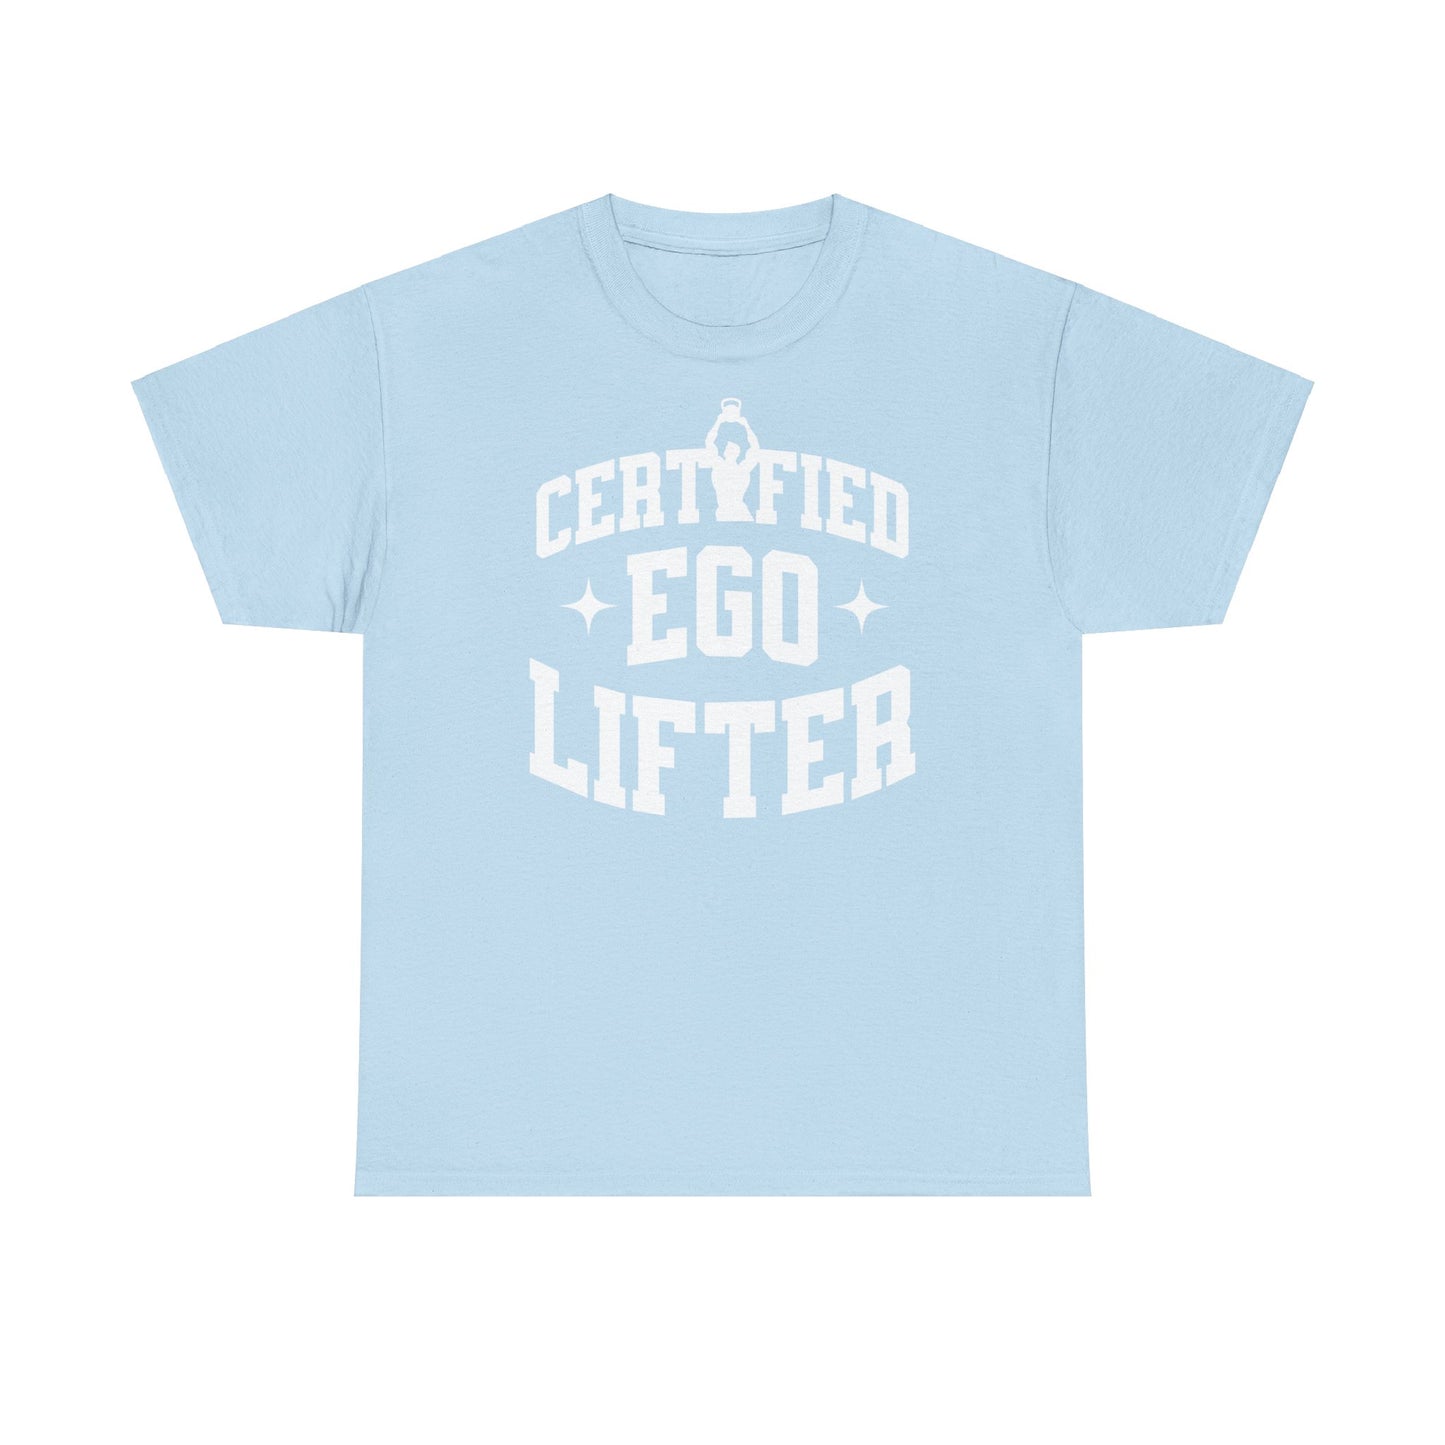 Entdecke unser selbstbewusstes T-Shirt mit dem Schriftzug "Certified Ego Lifter". Perfekt für Fitness-Enthusiasten und alle, die nach Motivation suchen. Hergestellt aus hochwertiger Baumwolle für ultimativen Komfort während des Trainings. Pump Cover Gym, für Massephase Bulking Season. Gym gift Tshirt for gymrat